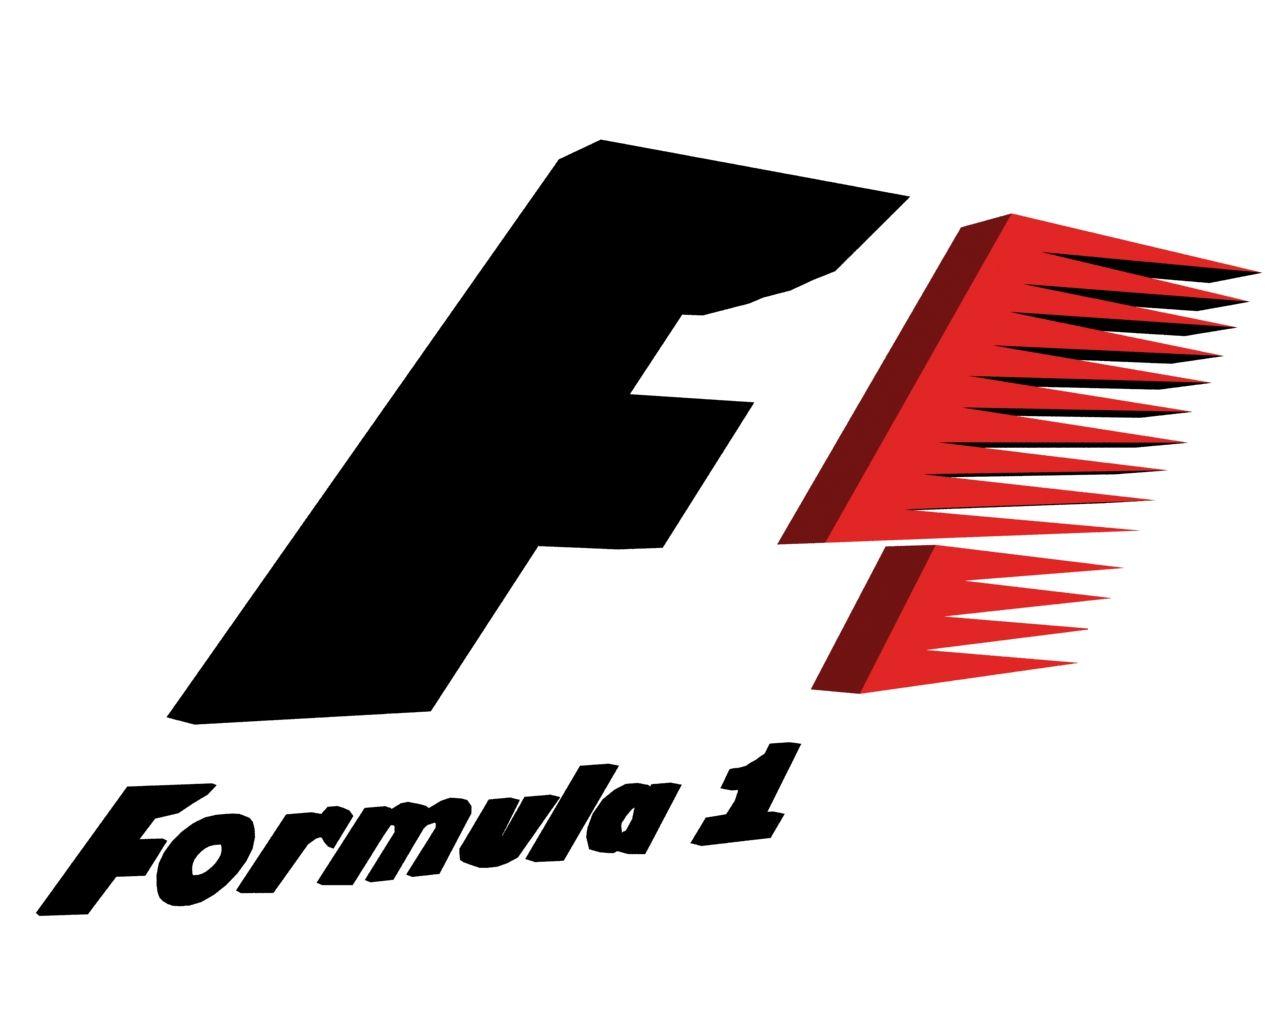 McLaren F1 Logo - Pin by rob henn on favorite wheels | Formula 1, Logos, Mclaren f1